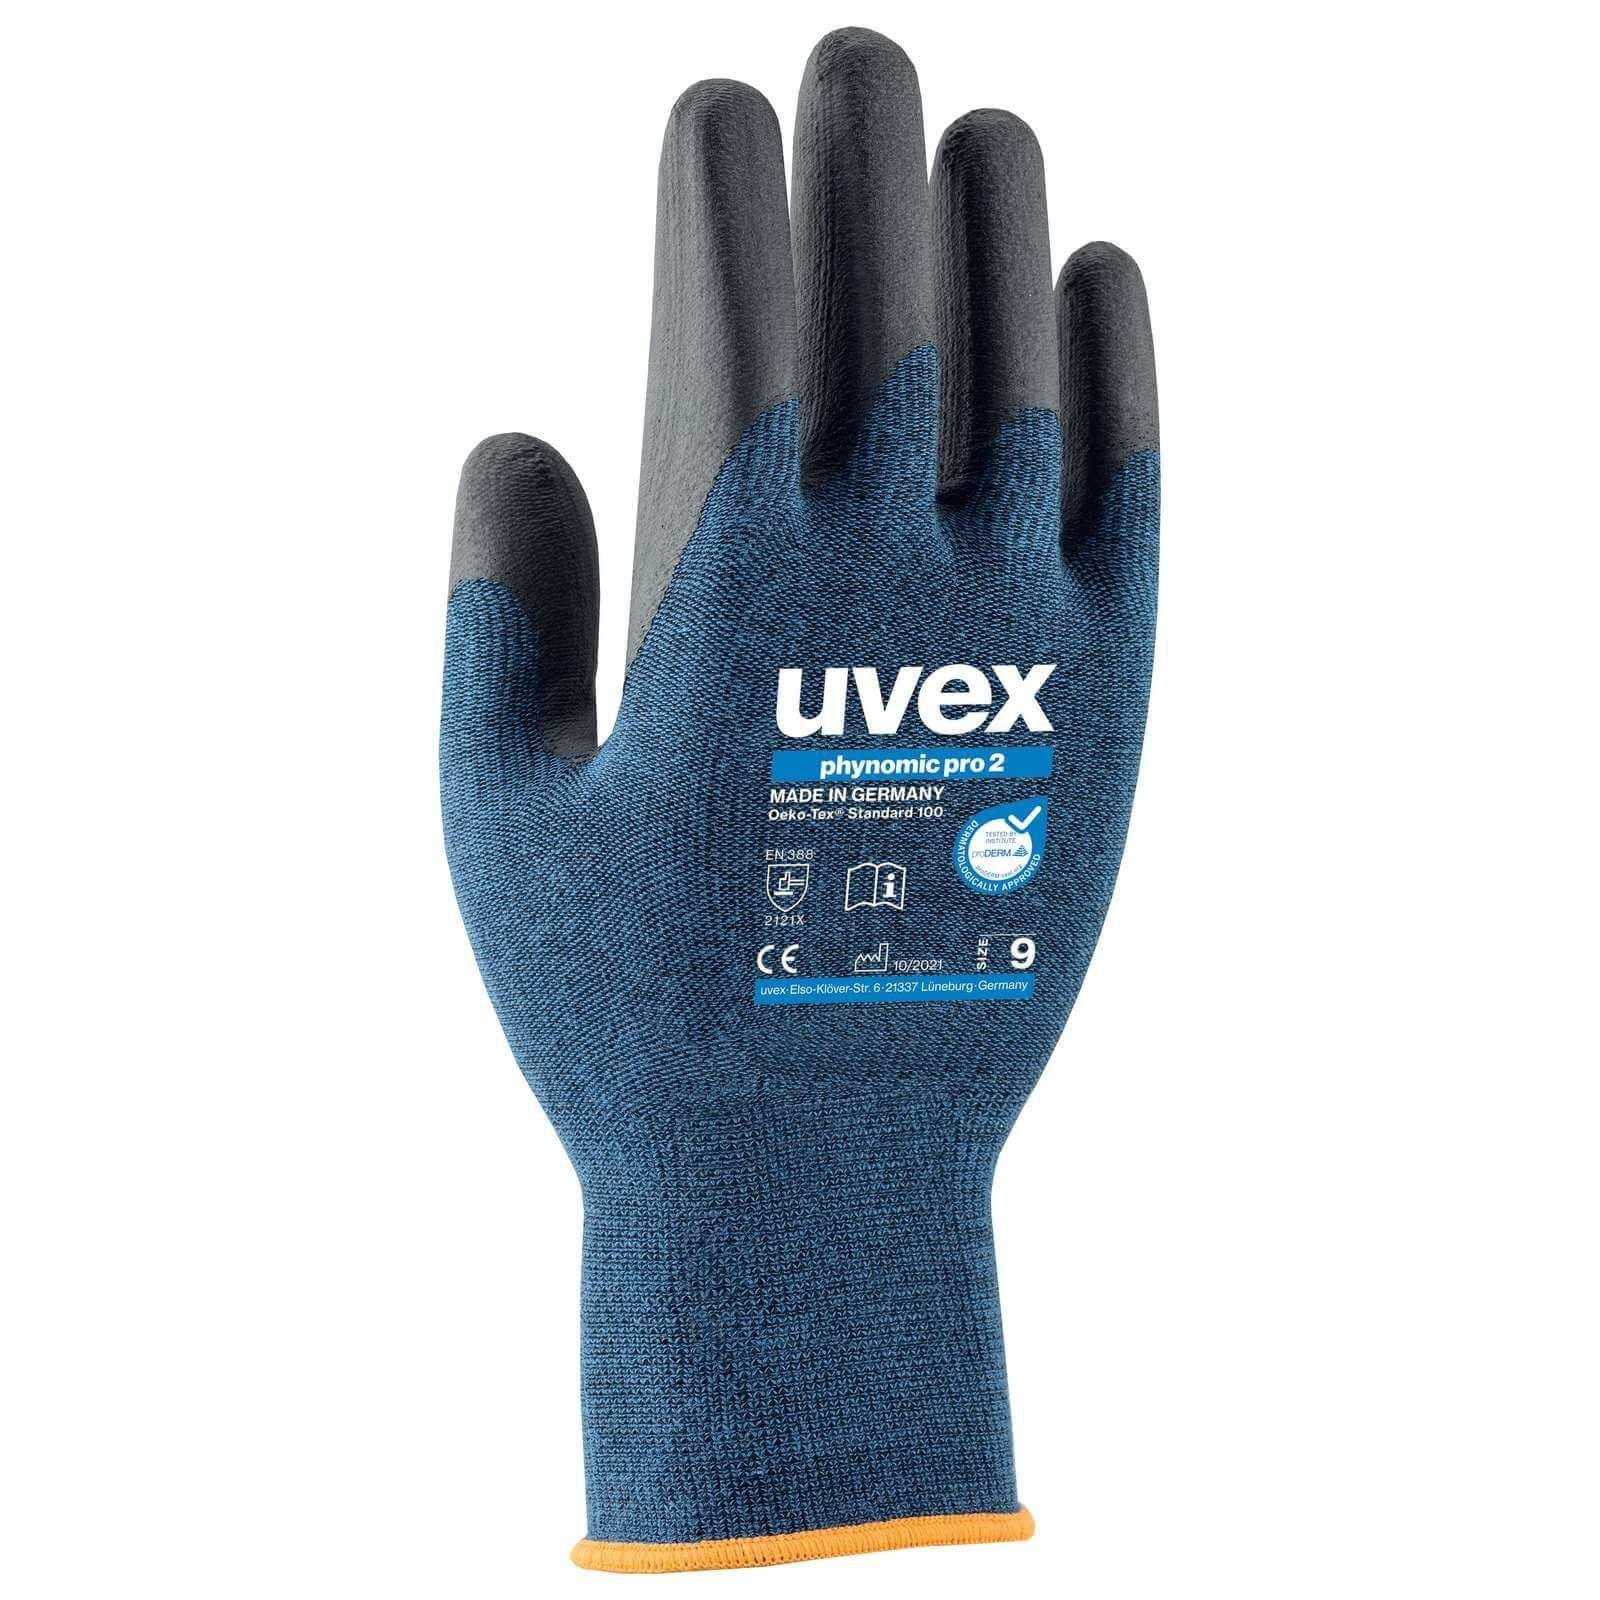 Uvex Mechaniker-Handschuhe uvex Schutzhandschuhe phynomic pro 2 60064, Handschuh aus Bambusfasern (Spar-Set)